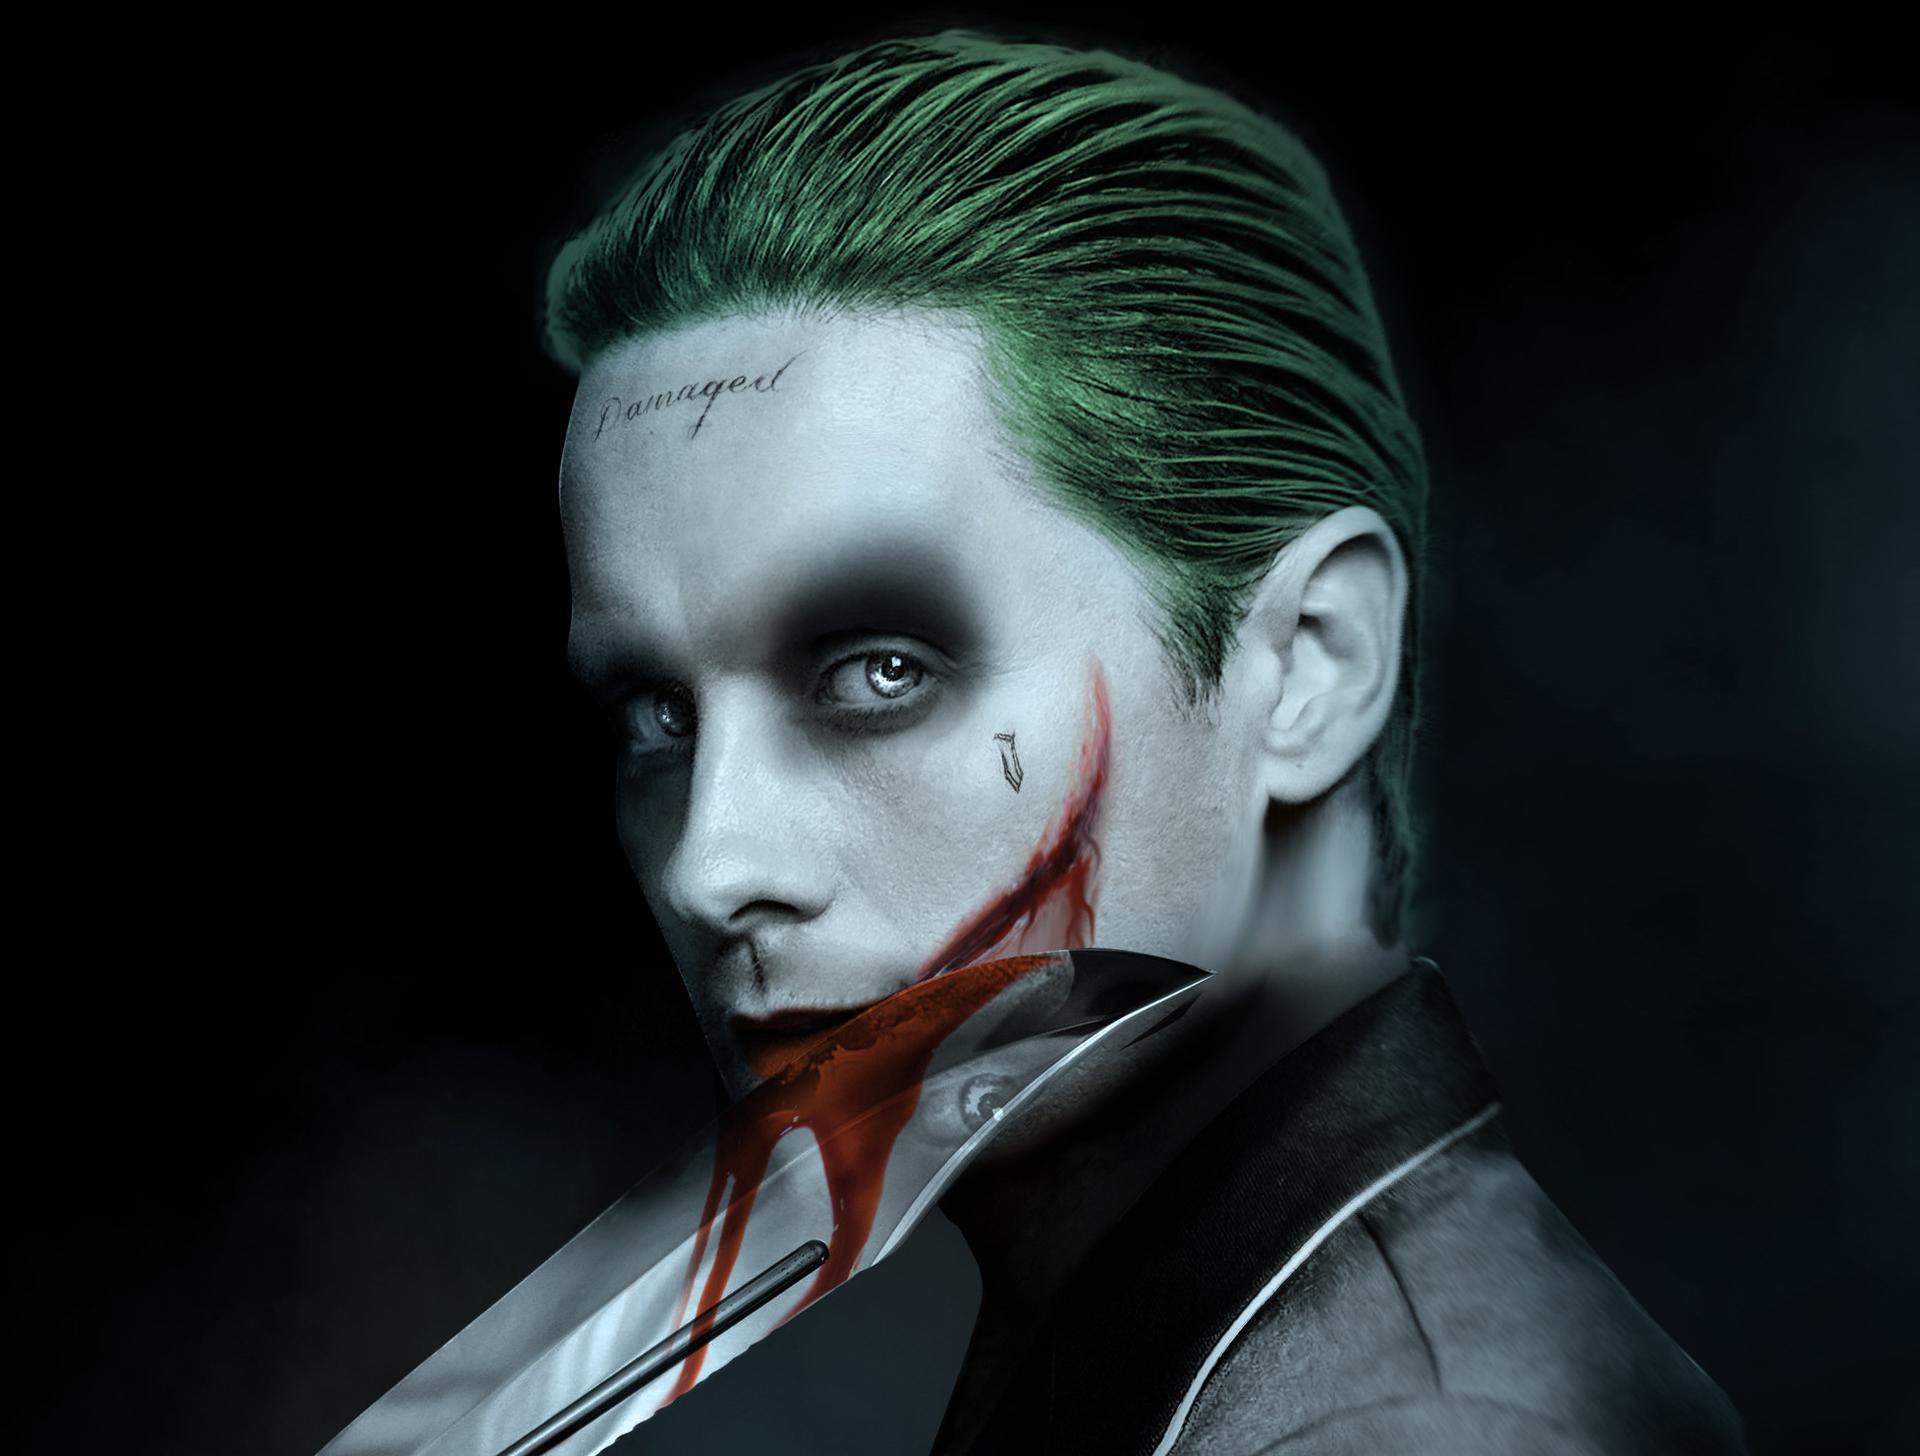 Jared Leto Joker Best Artwork Wallpaper and Free